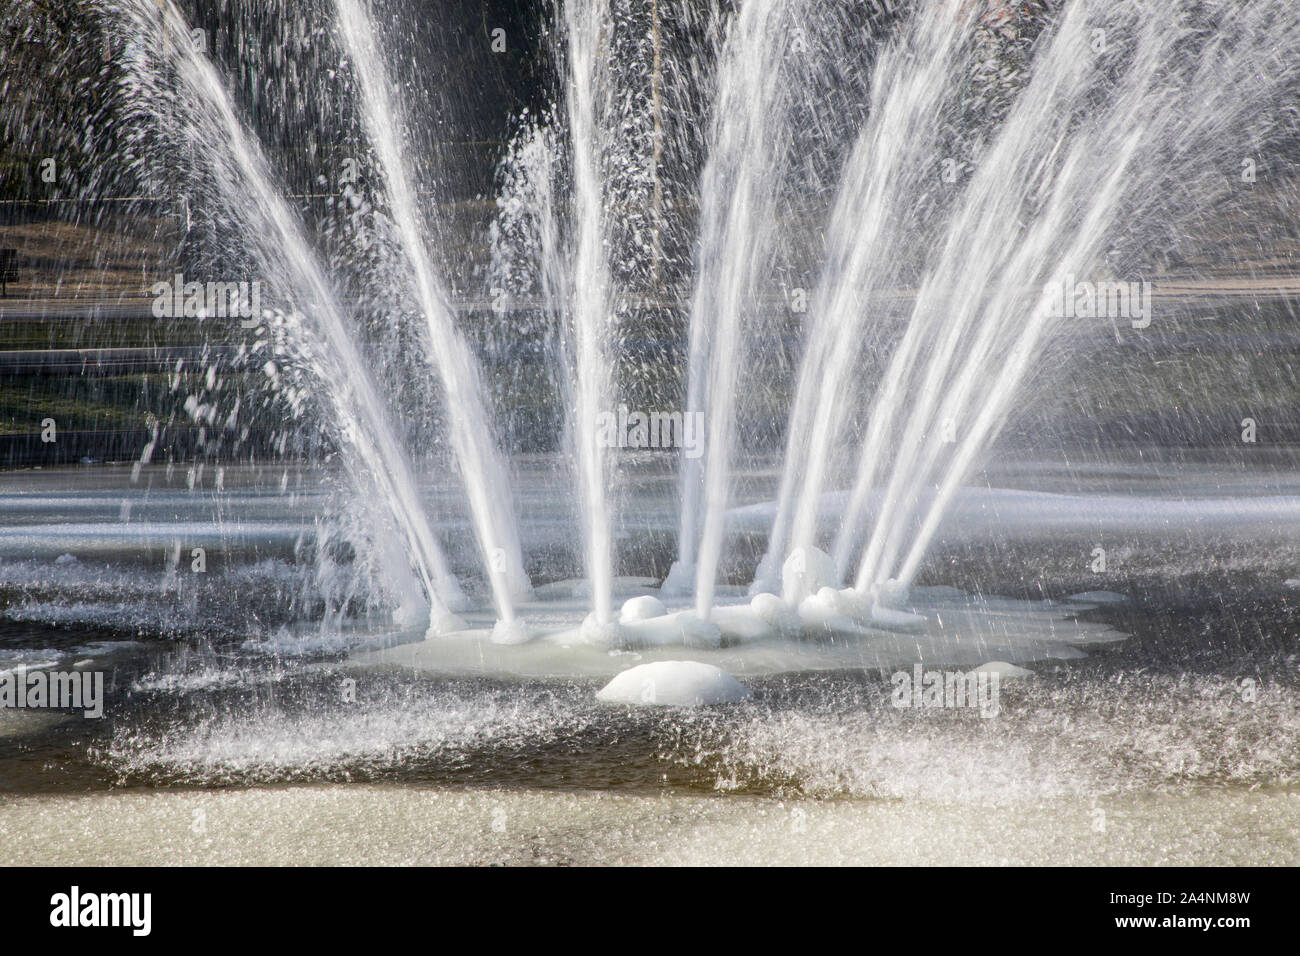 Springbrunnen, Brunnen, Winter, teilweise gefrorenen Wassers bei minus Temperaturen, Stockfoto